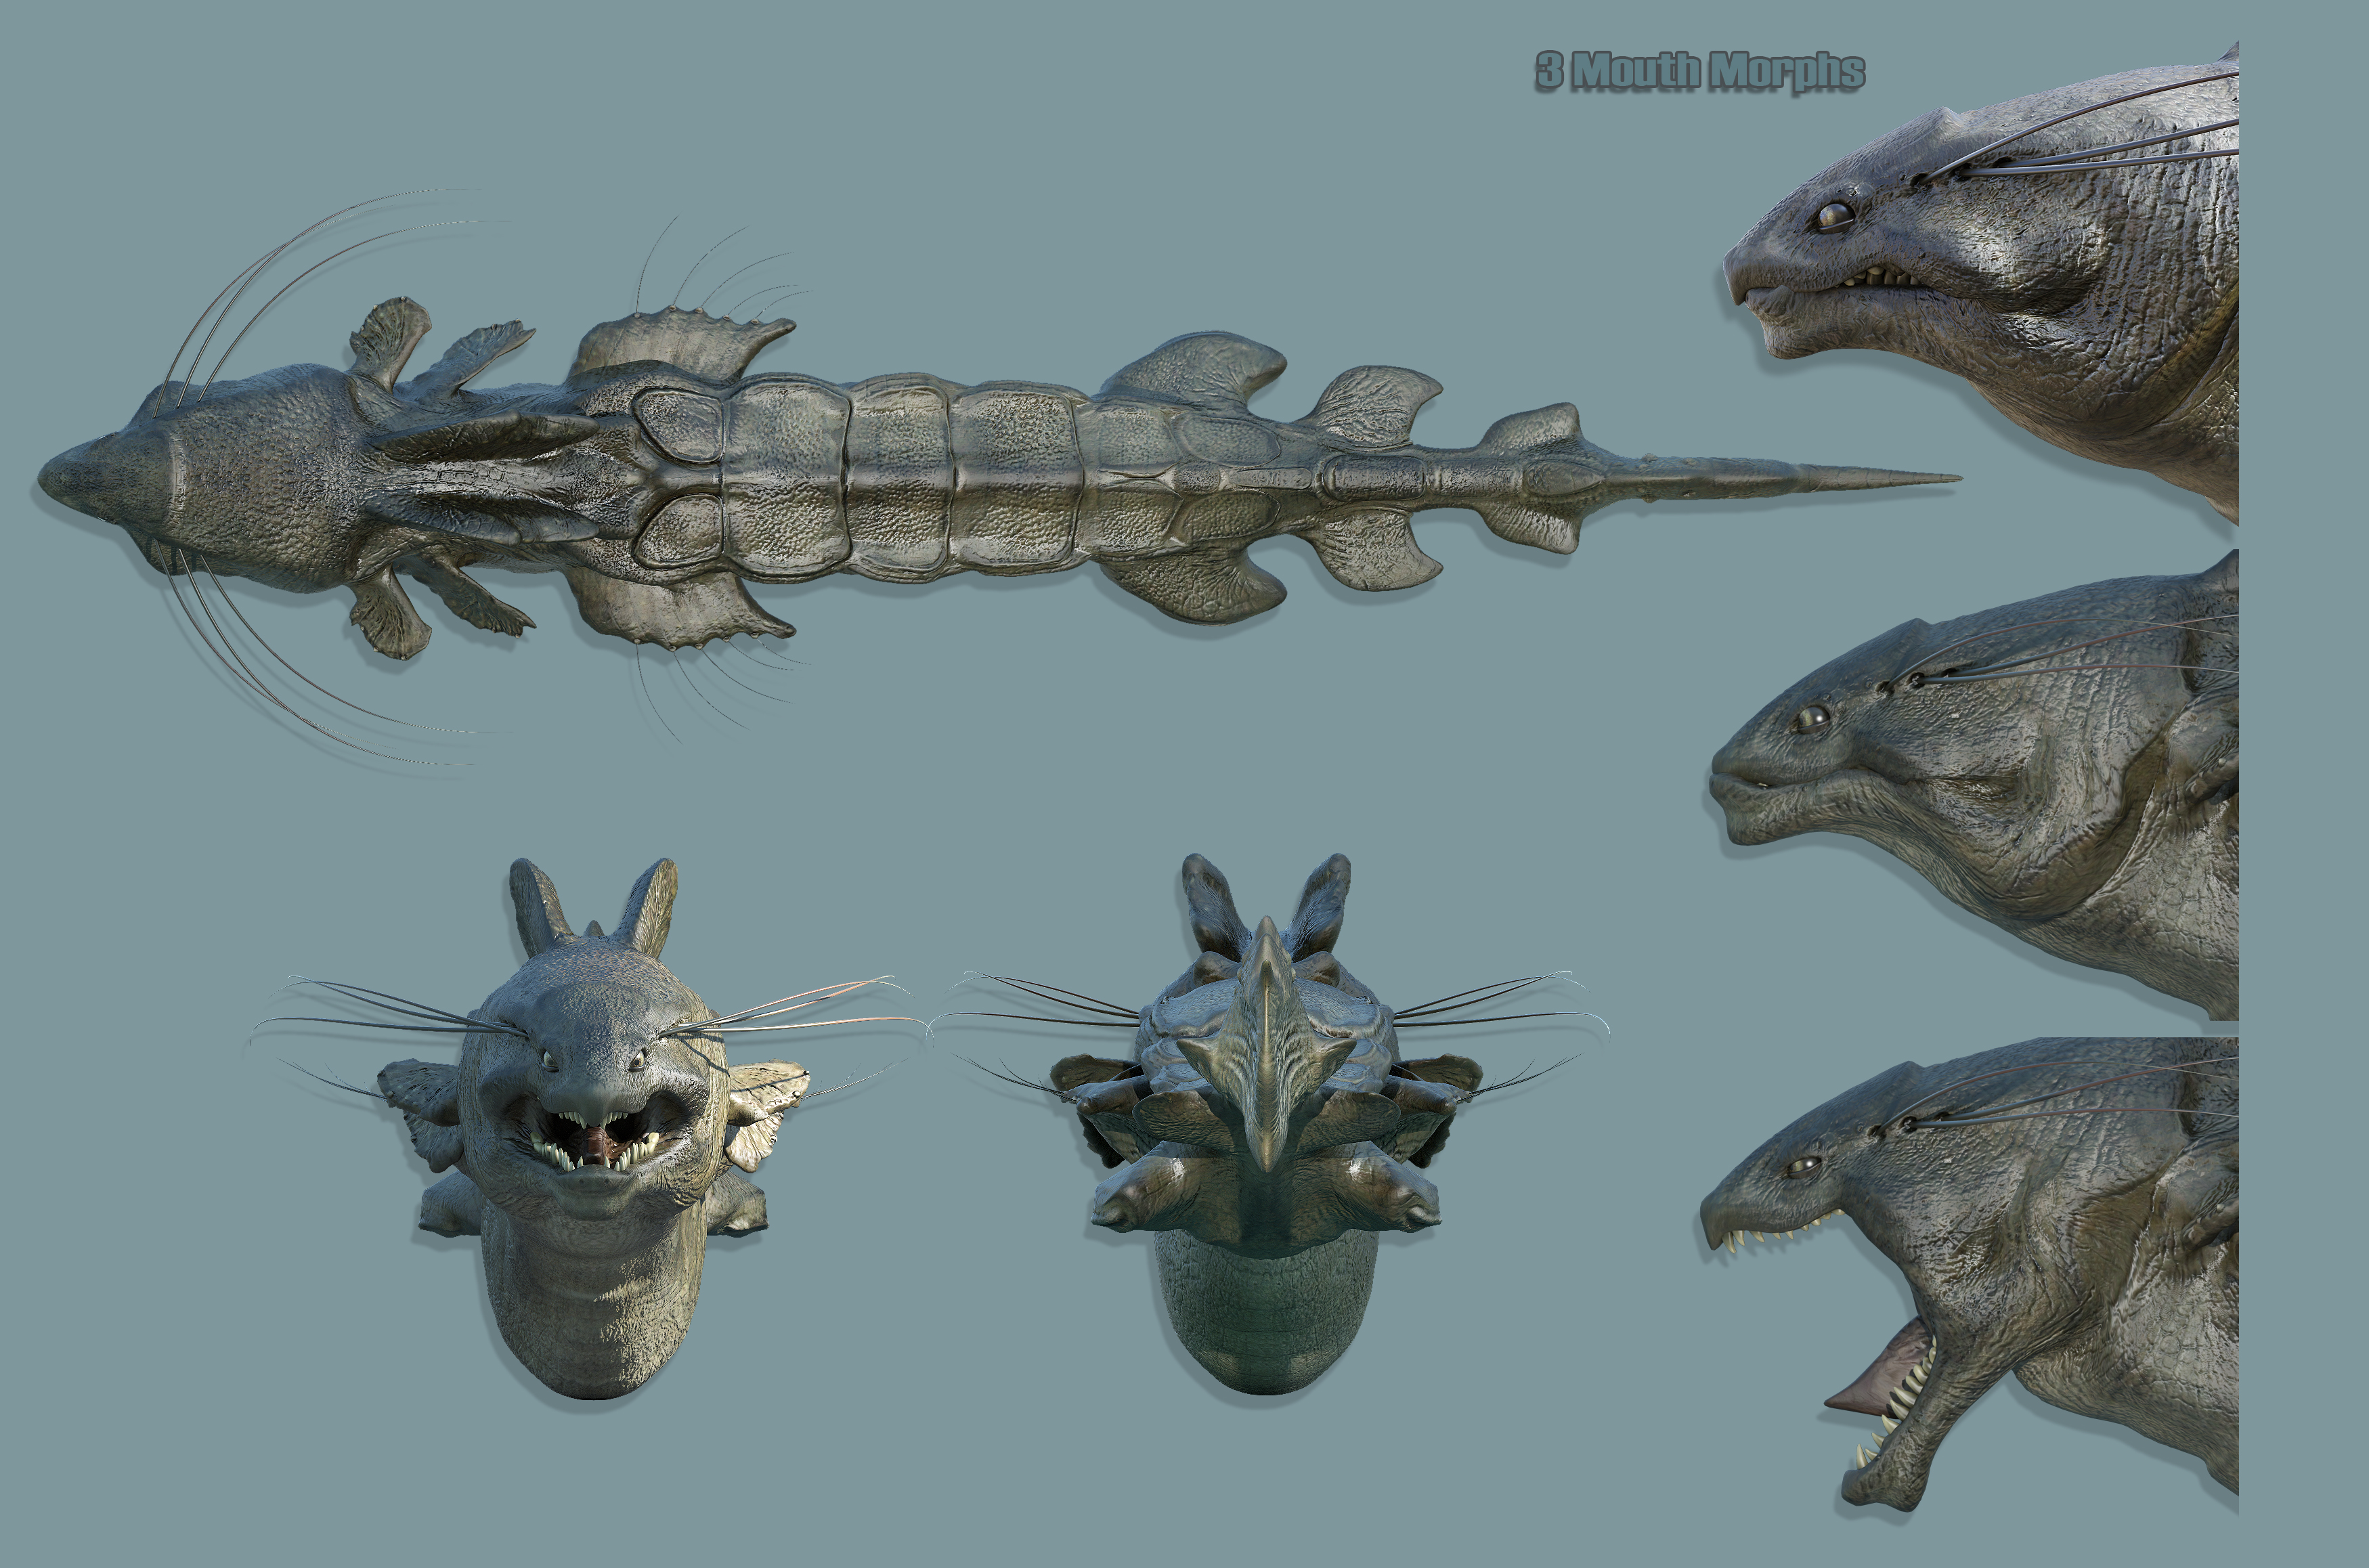 Sea Beast by: The AntFarm, 3D Models by Daz 3D